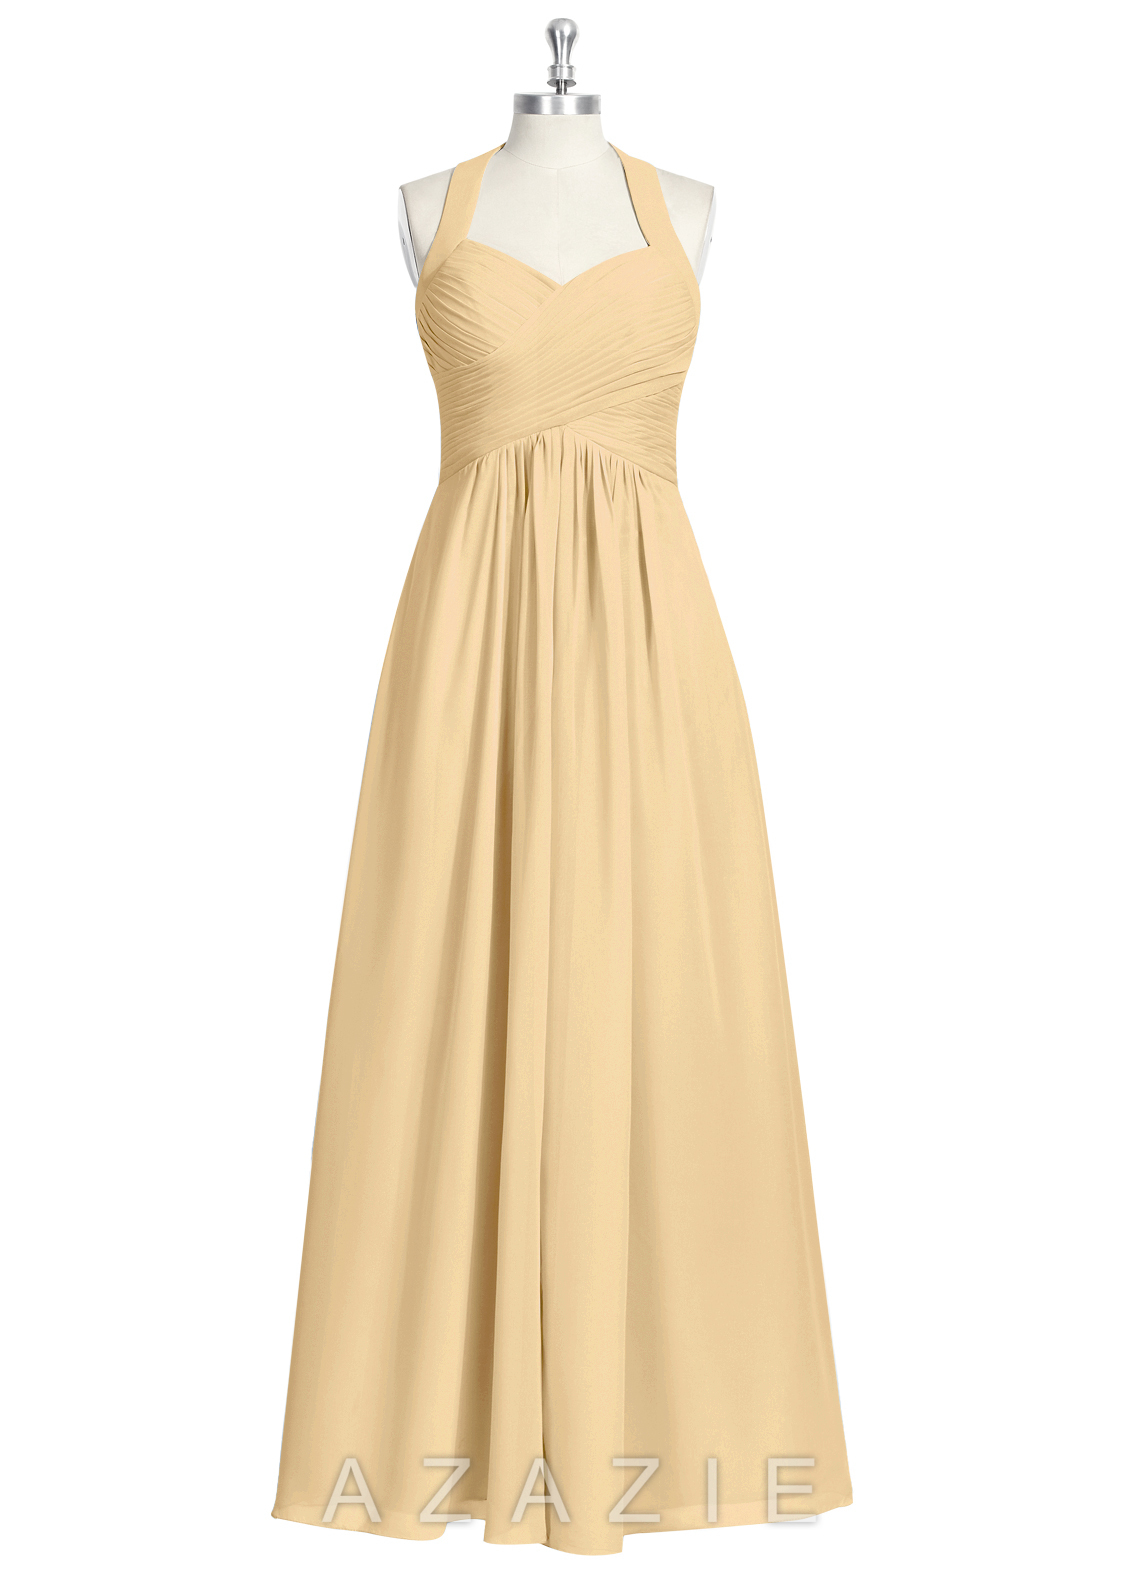 Azazie Savannah Bridesmaid Dress | Azazie